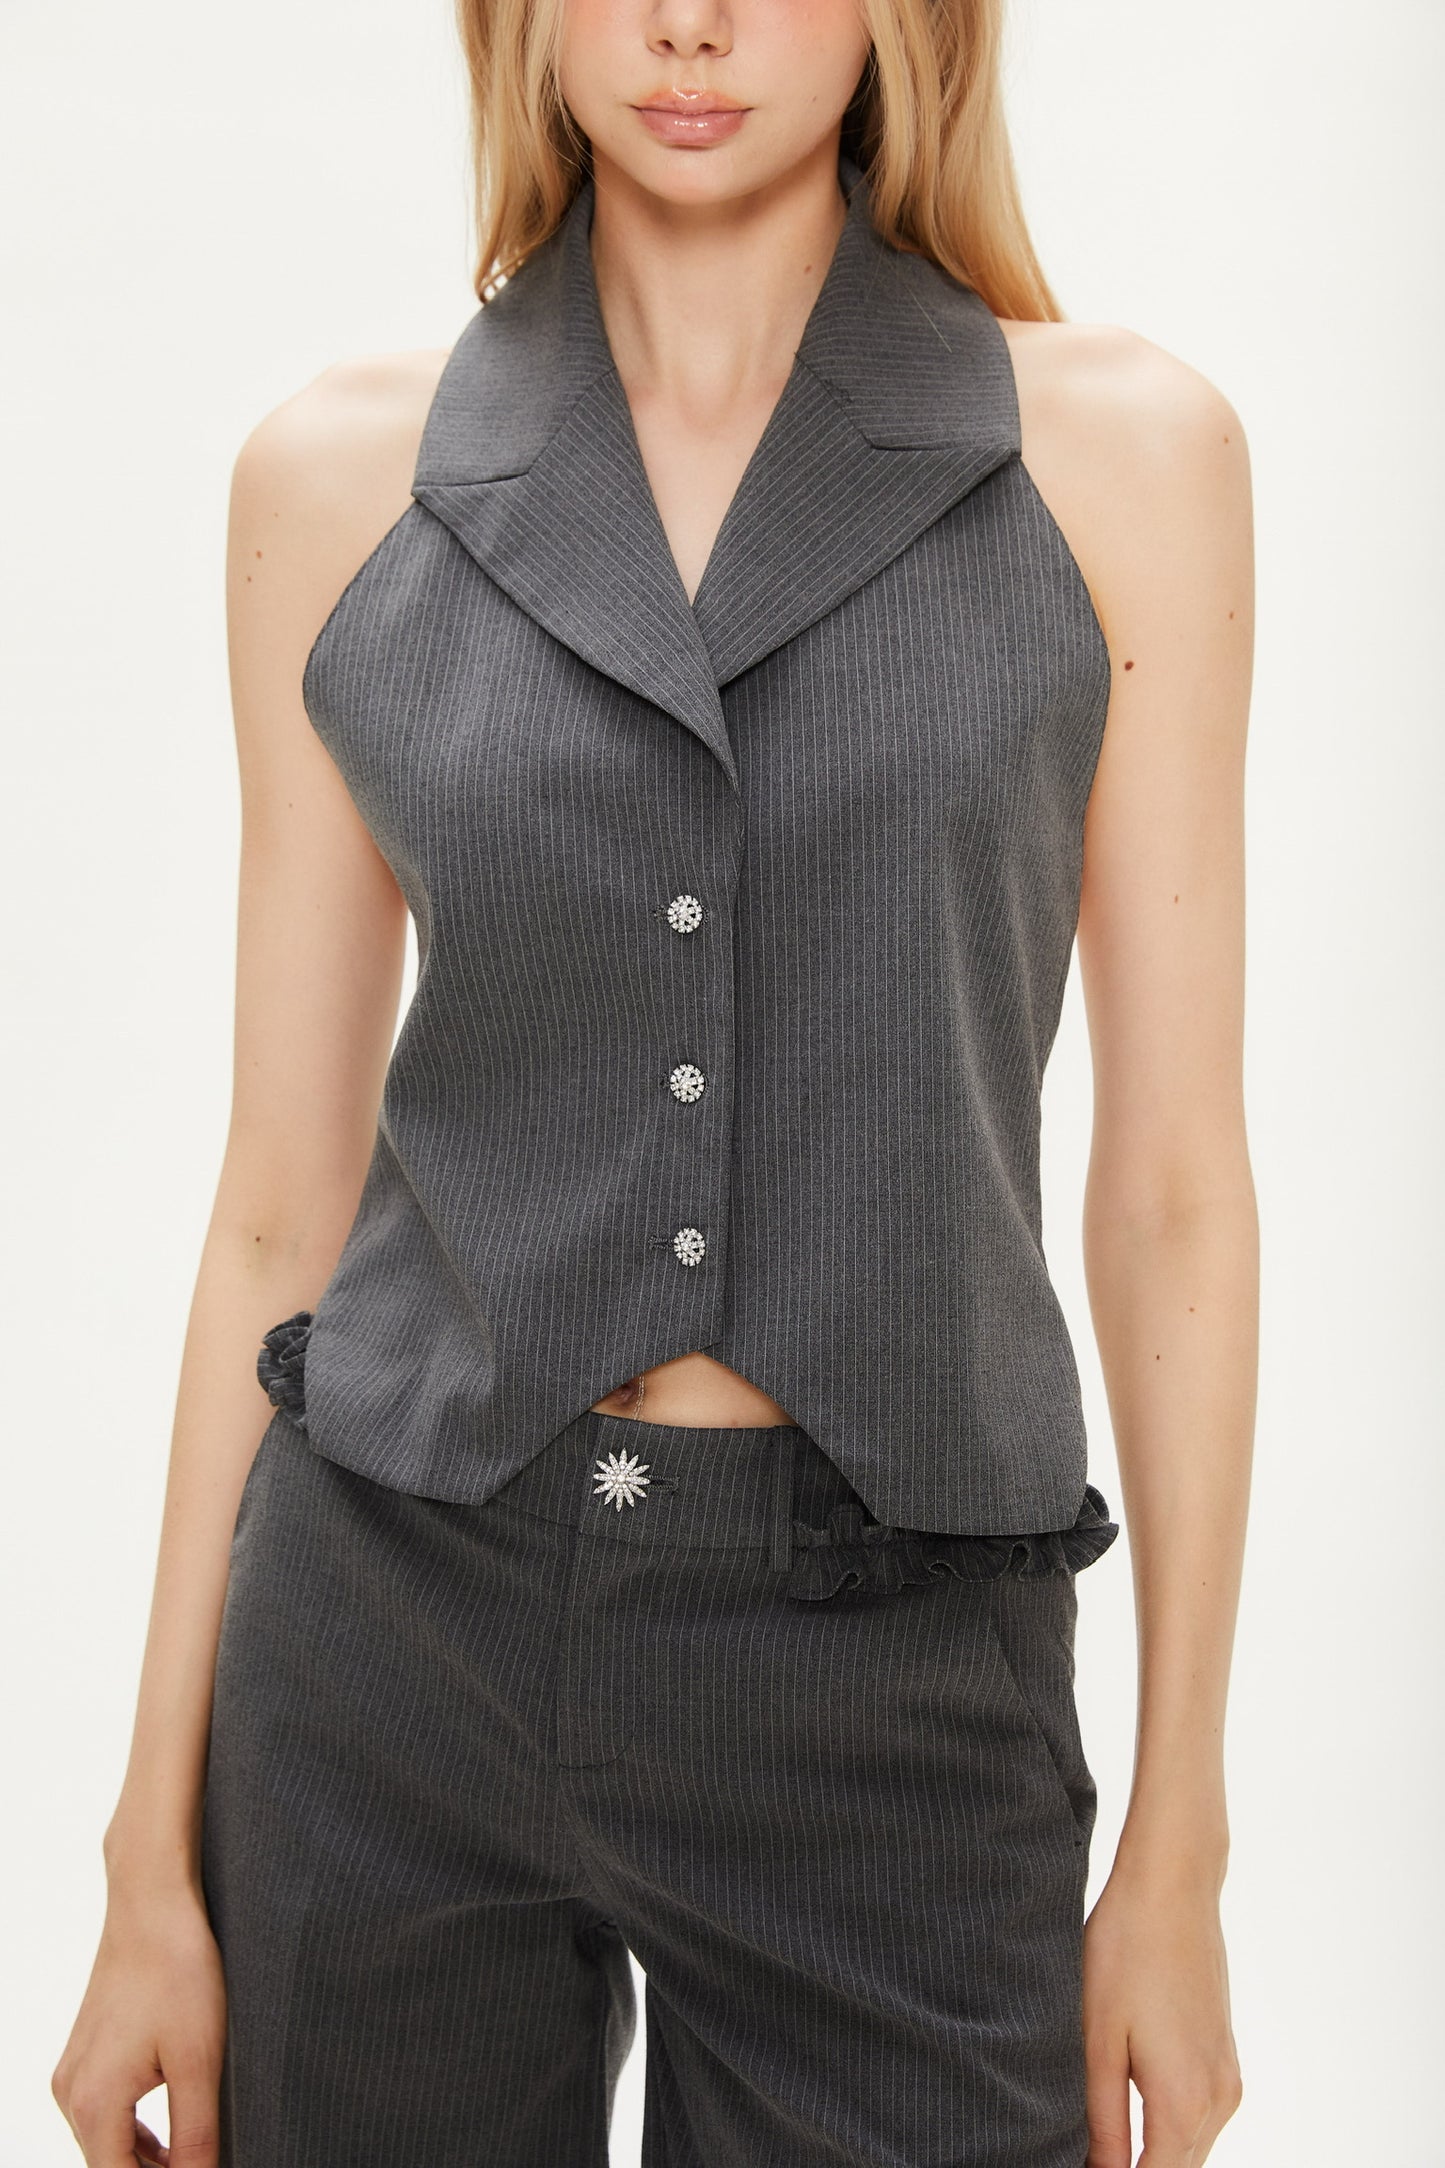 Joan Backless Neck Stripe Vest in Dark Gray